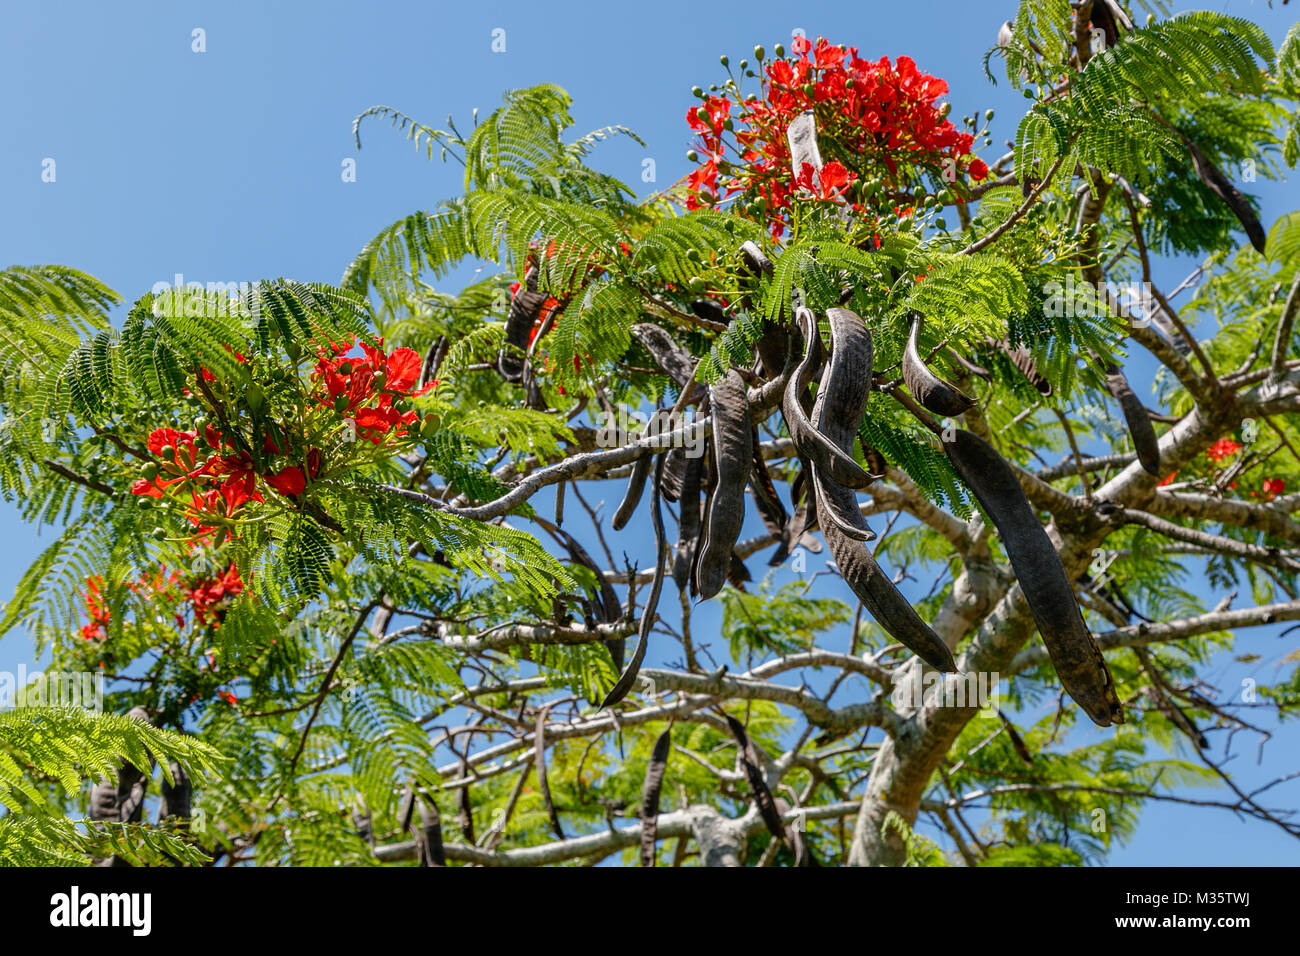 Arbre Flamboyant en fleurs ou Delonix regia et ses gousses. Queensland, Australie Banque D'Images